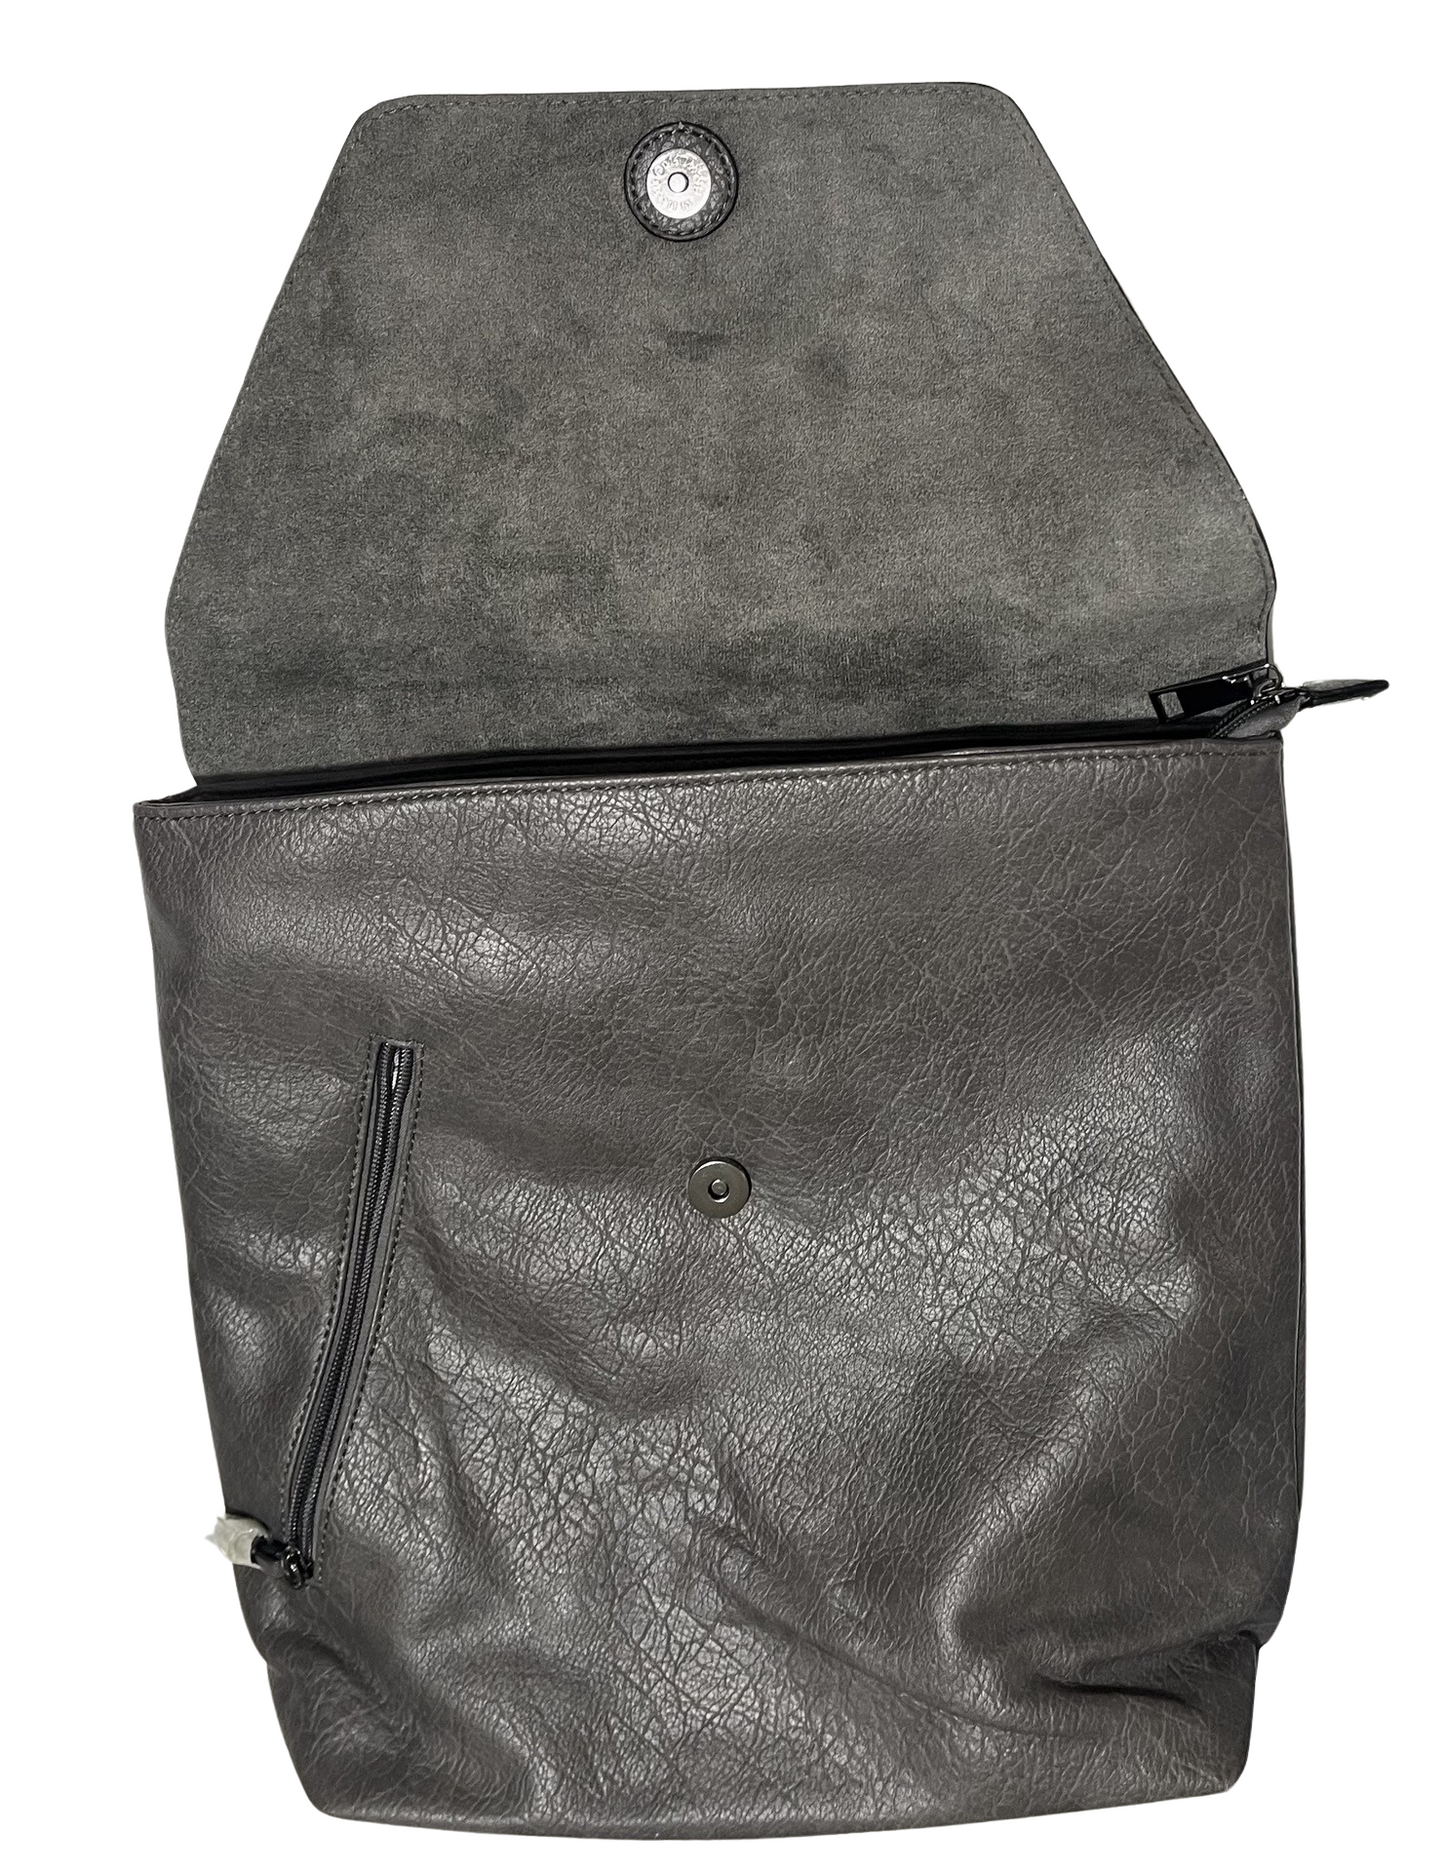 Schwarzer Kunstlederrucksack mit Stoffgriffen, Außentasche, Laptophalter bis 14 Zoll